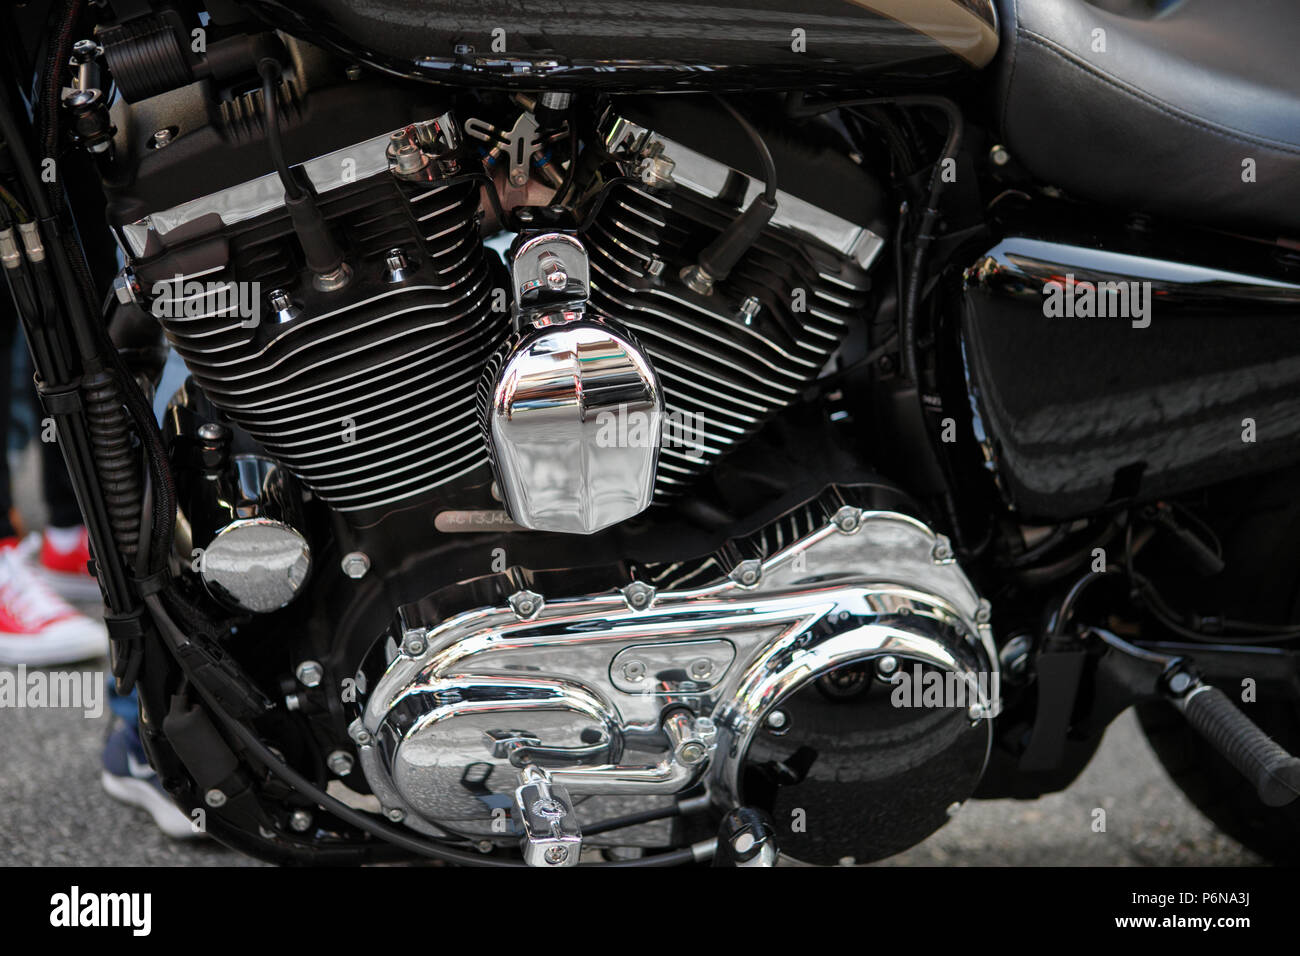 Détail moteur moto Harley Davidson Banque D'Images